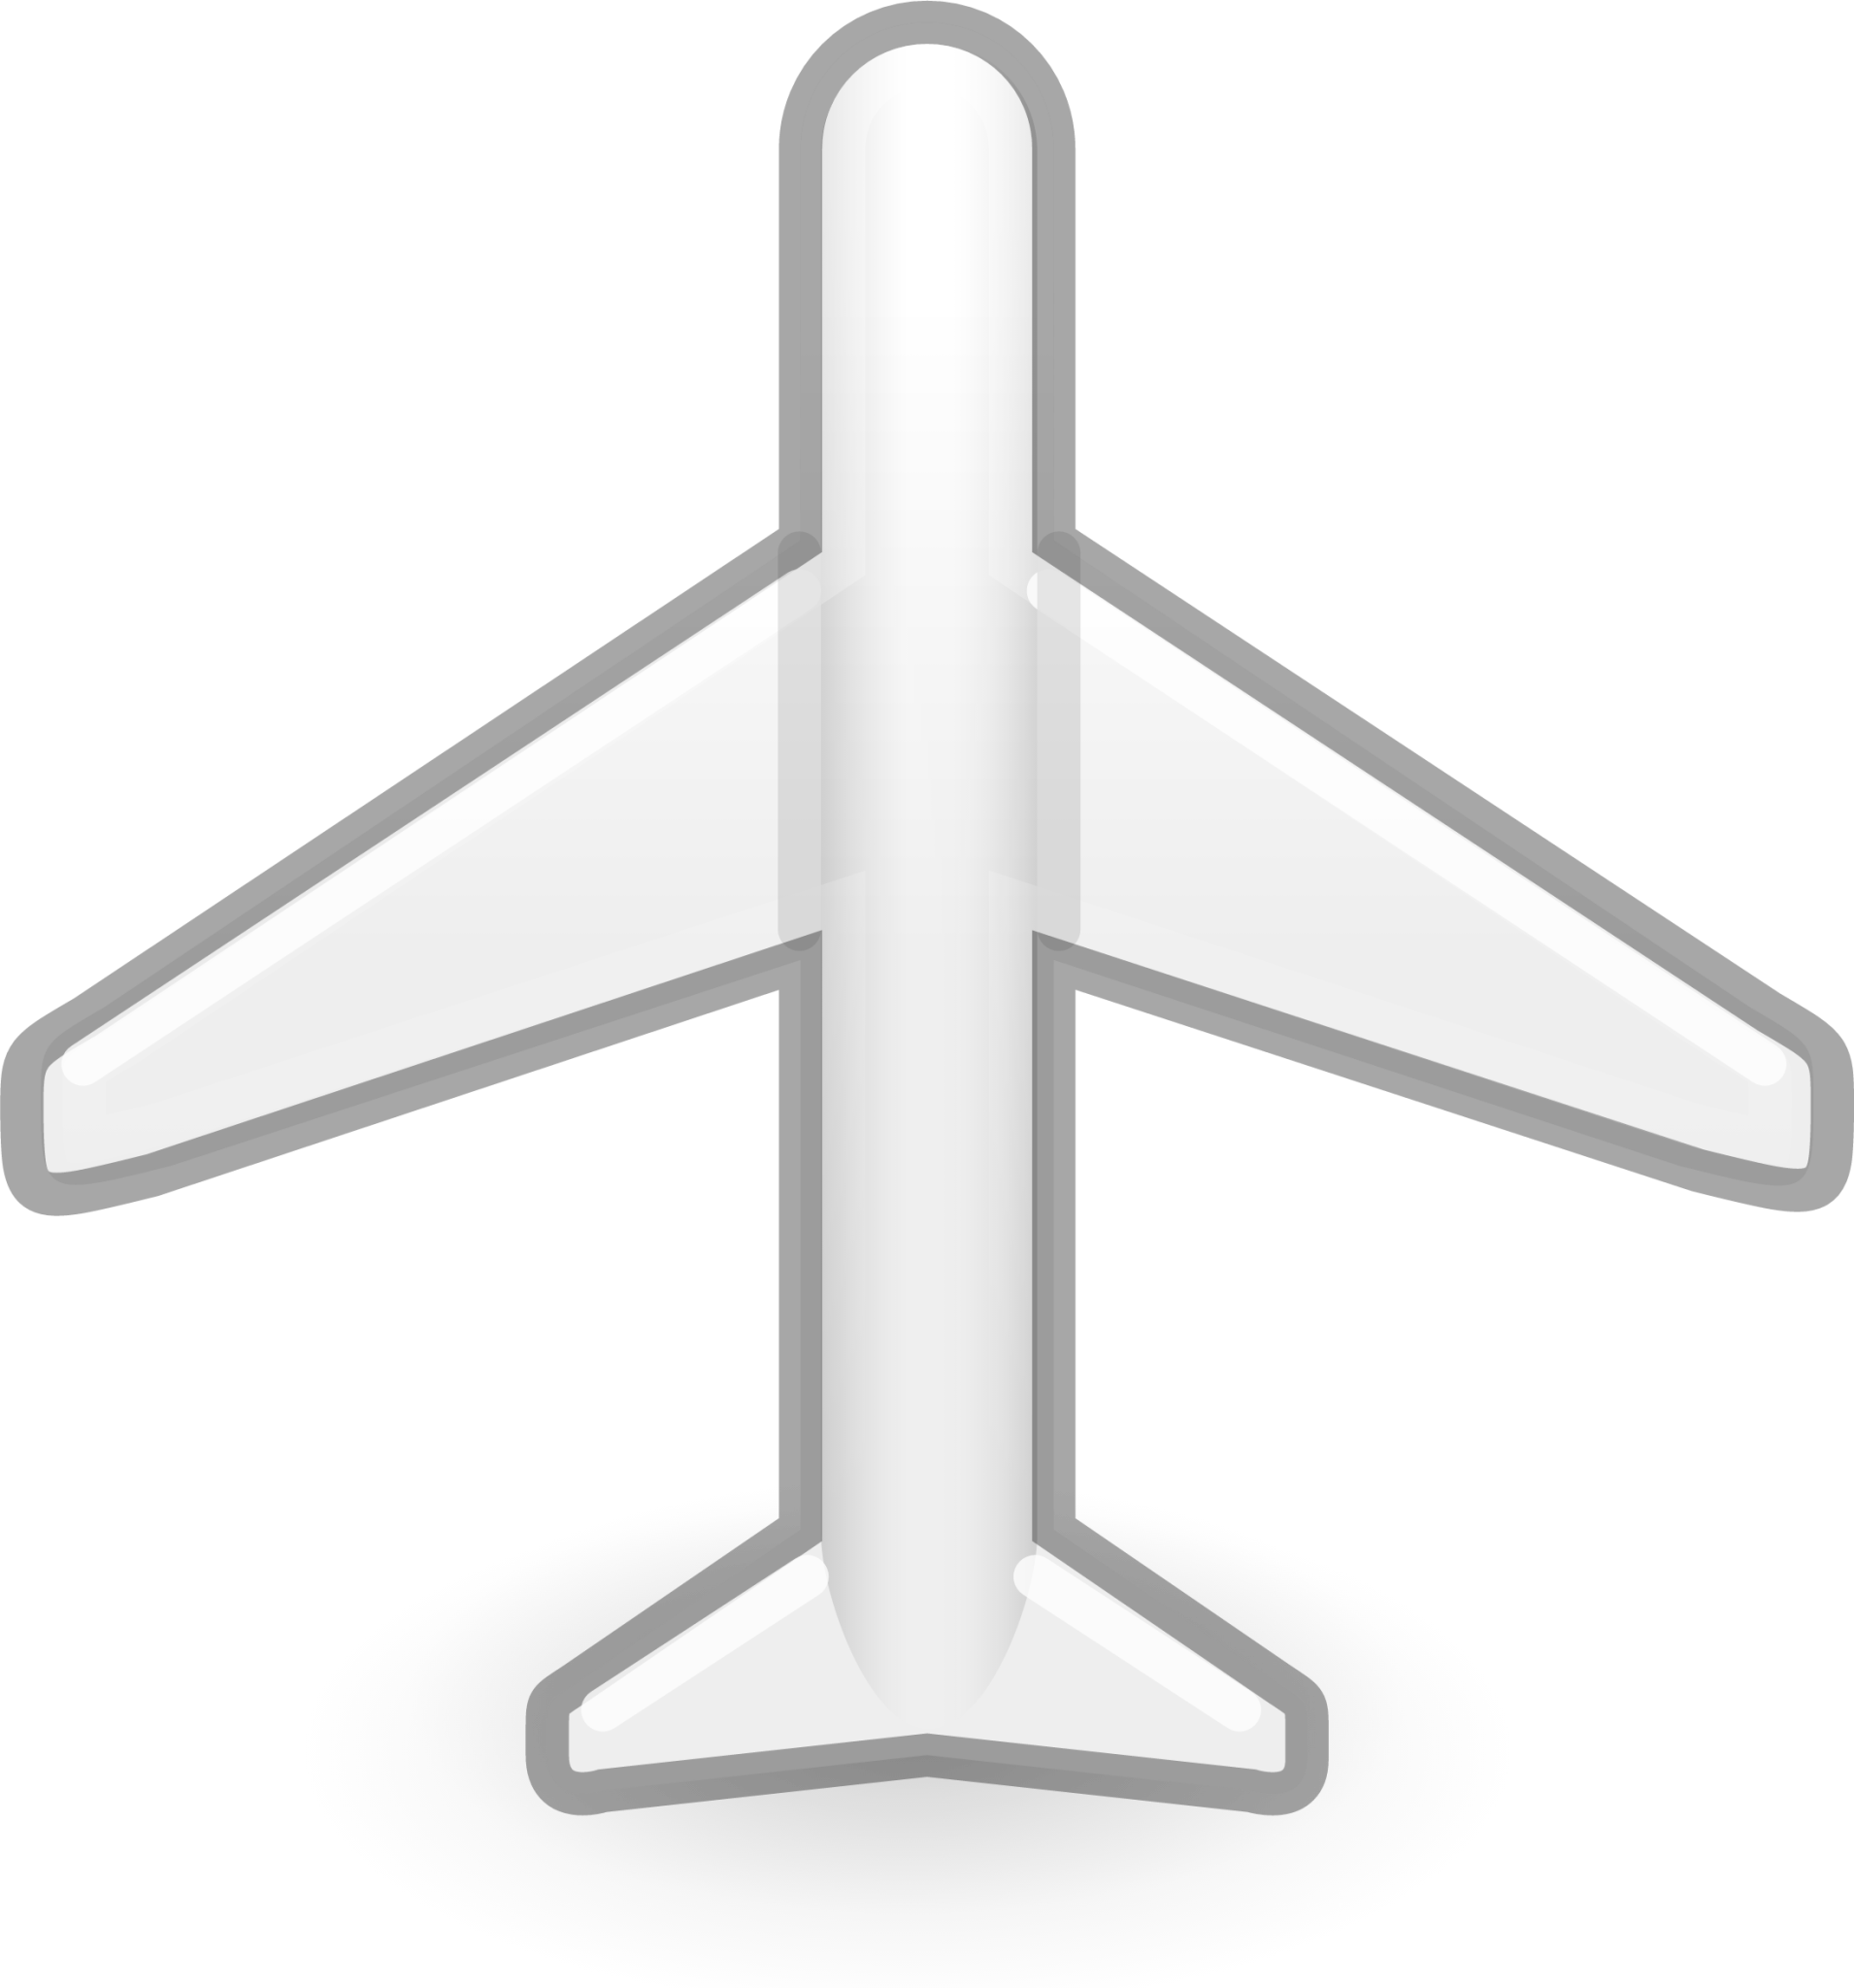 airplane mode icon